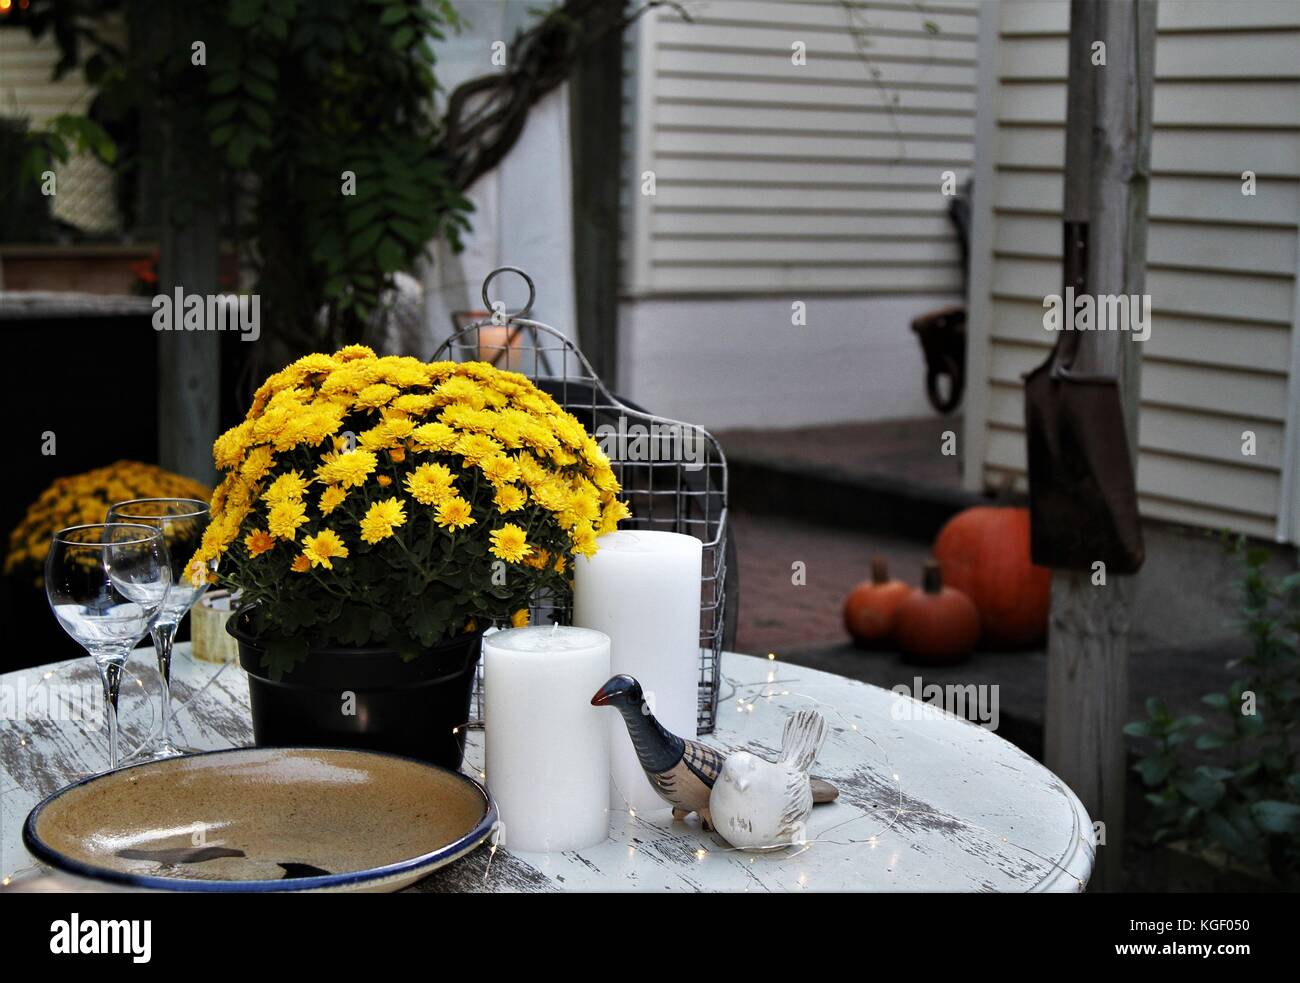 Mostrar tabla caída decorado con velas, cerámica, copas de vino, el crisantemo planta Foto de stock